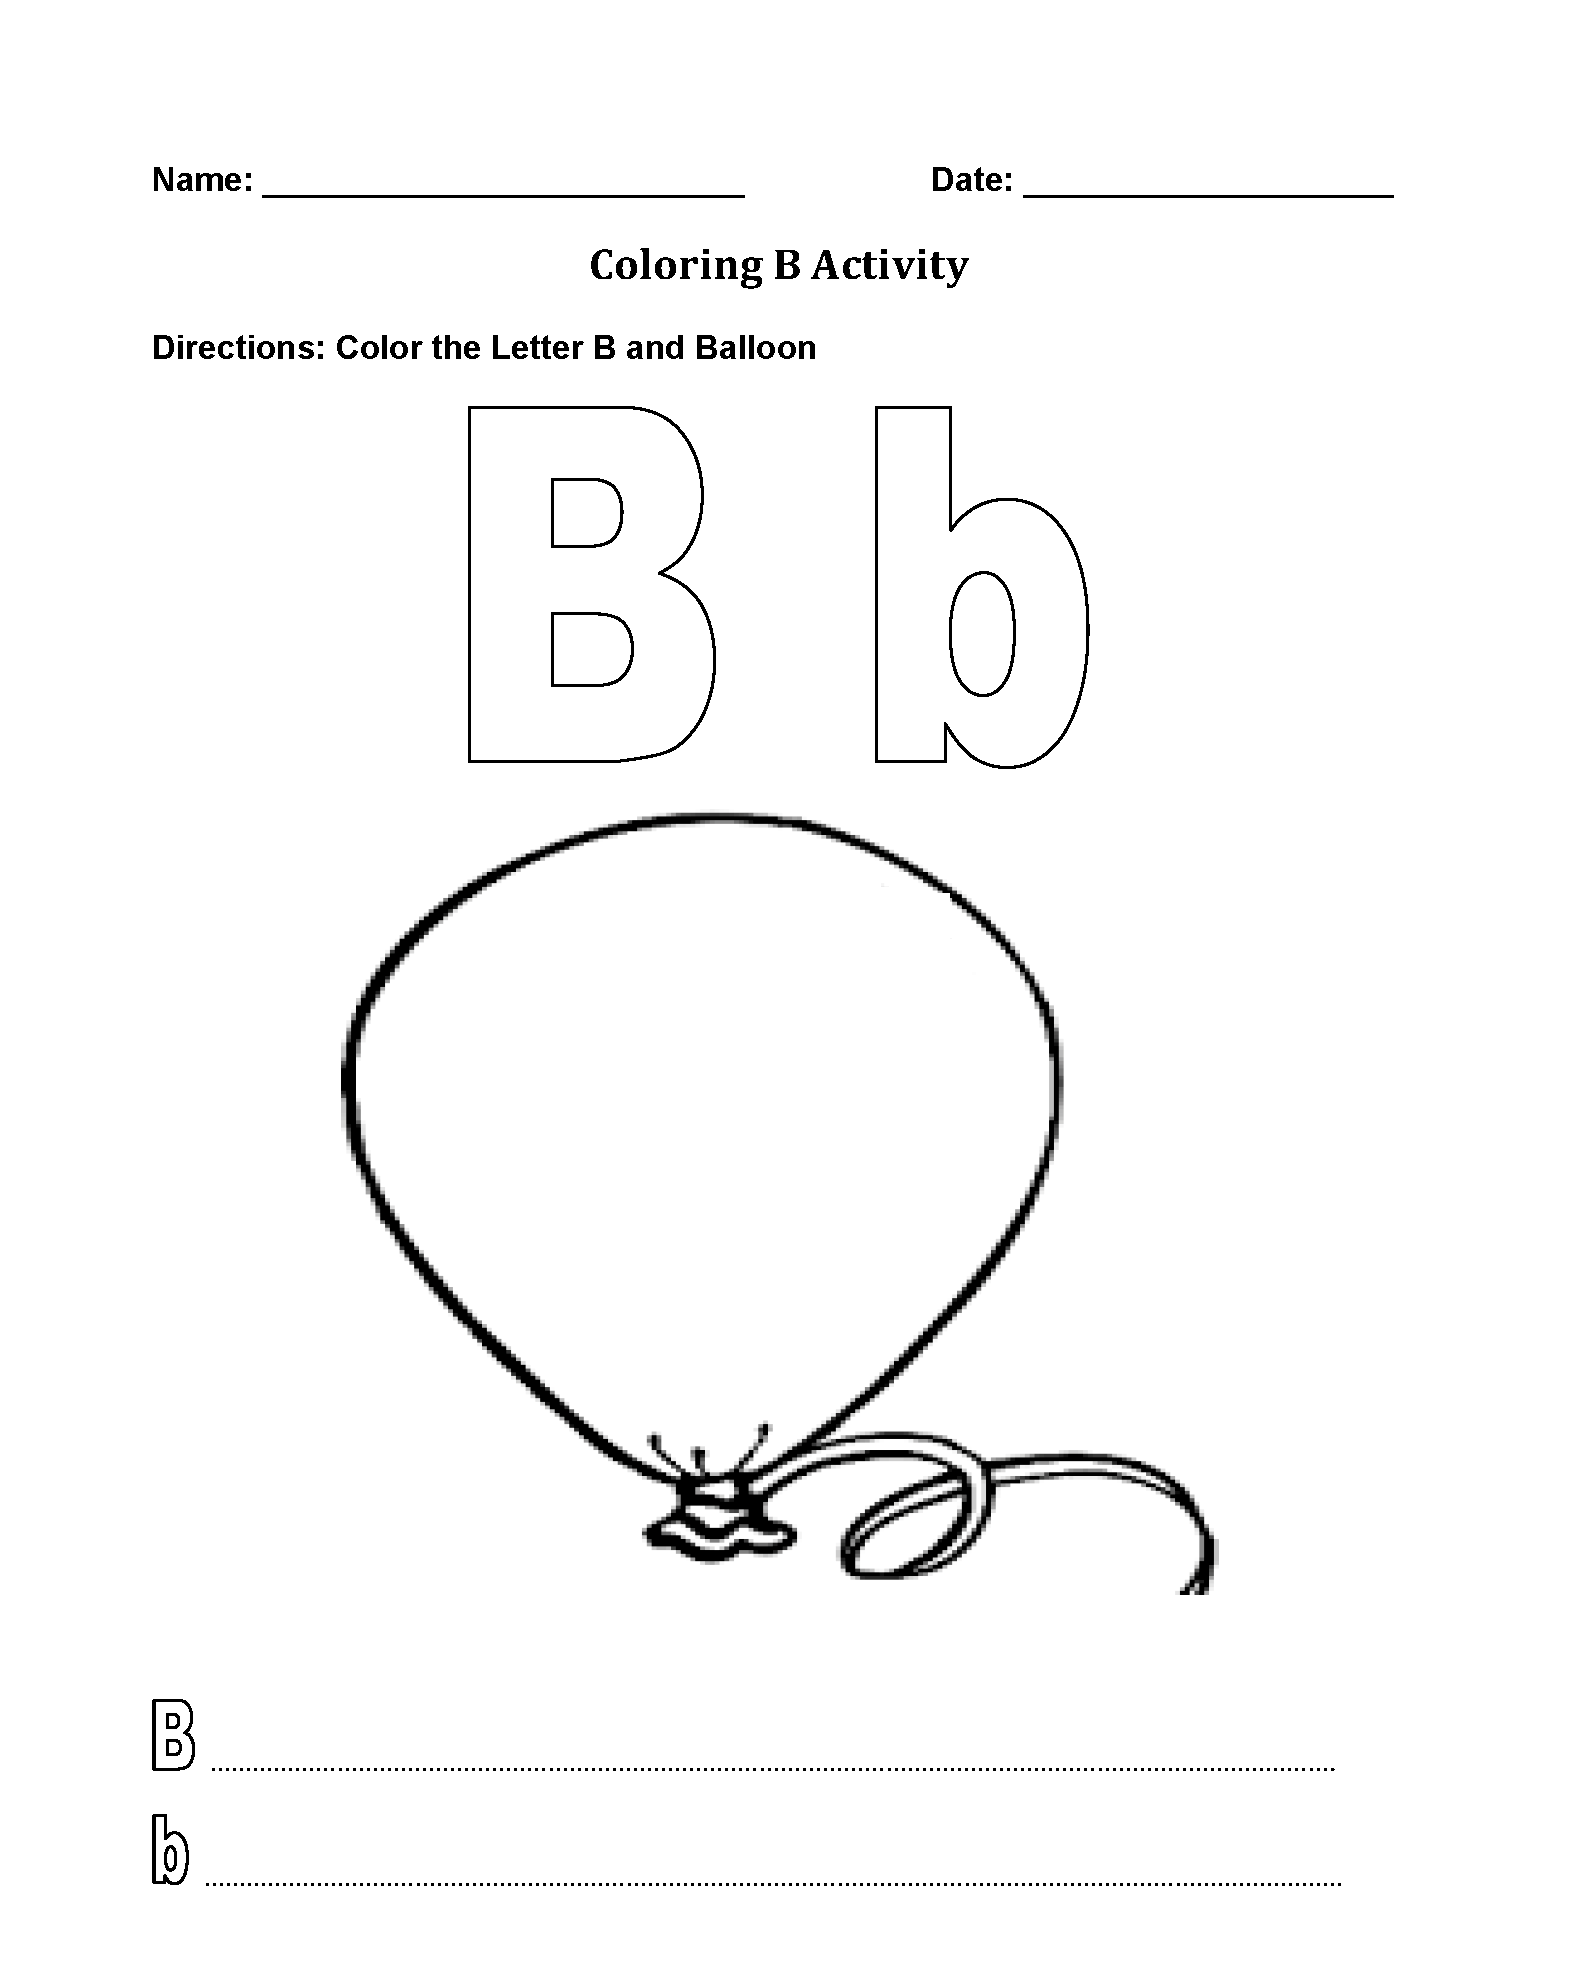 find-the-letter-b-worksheet-all-kids-network-letter-b-worksheets-for-preschoolers-online